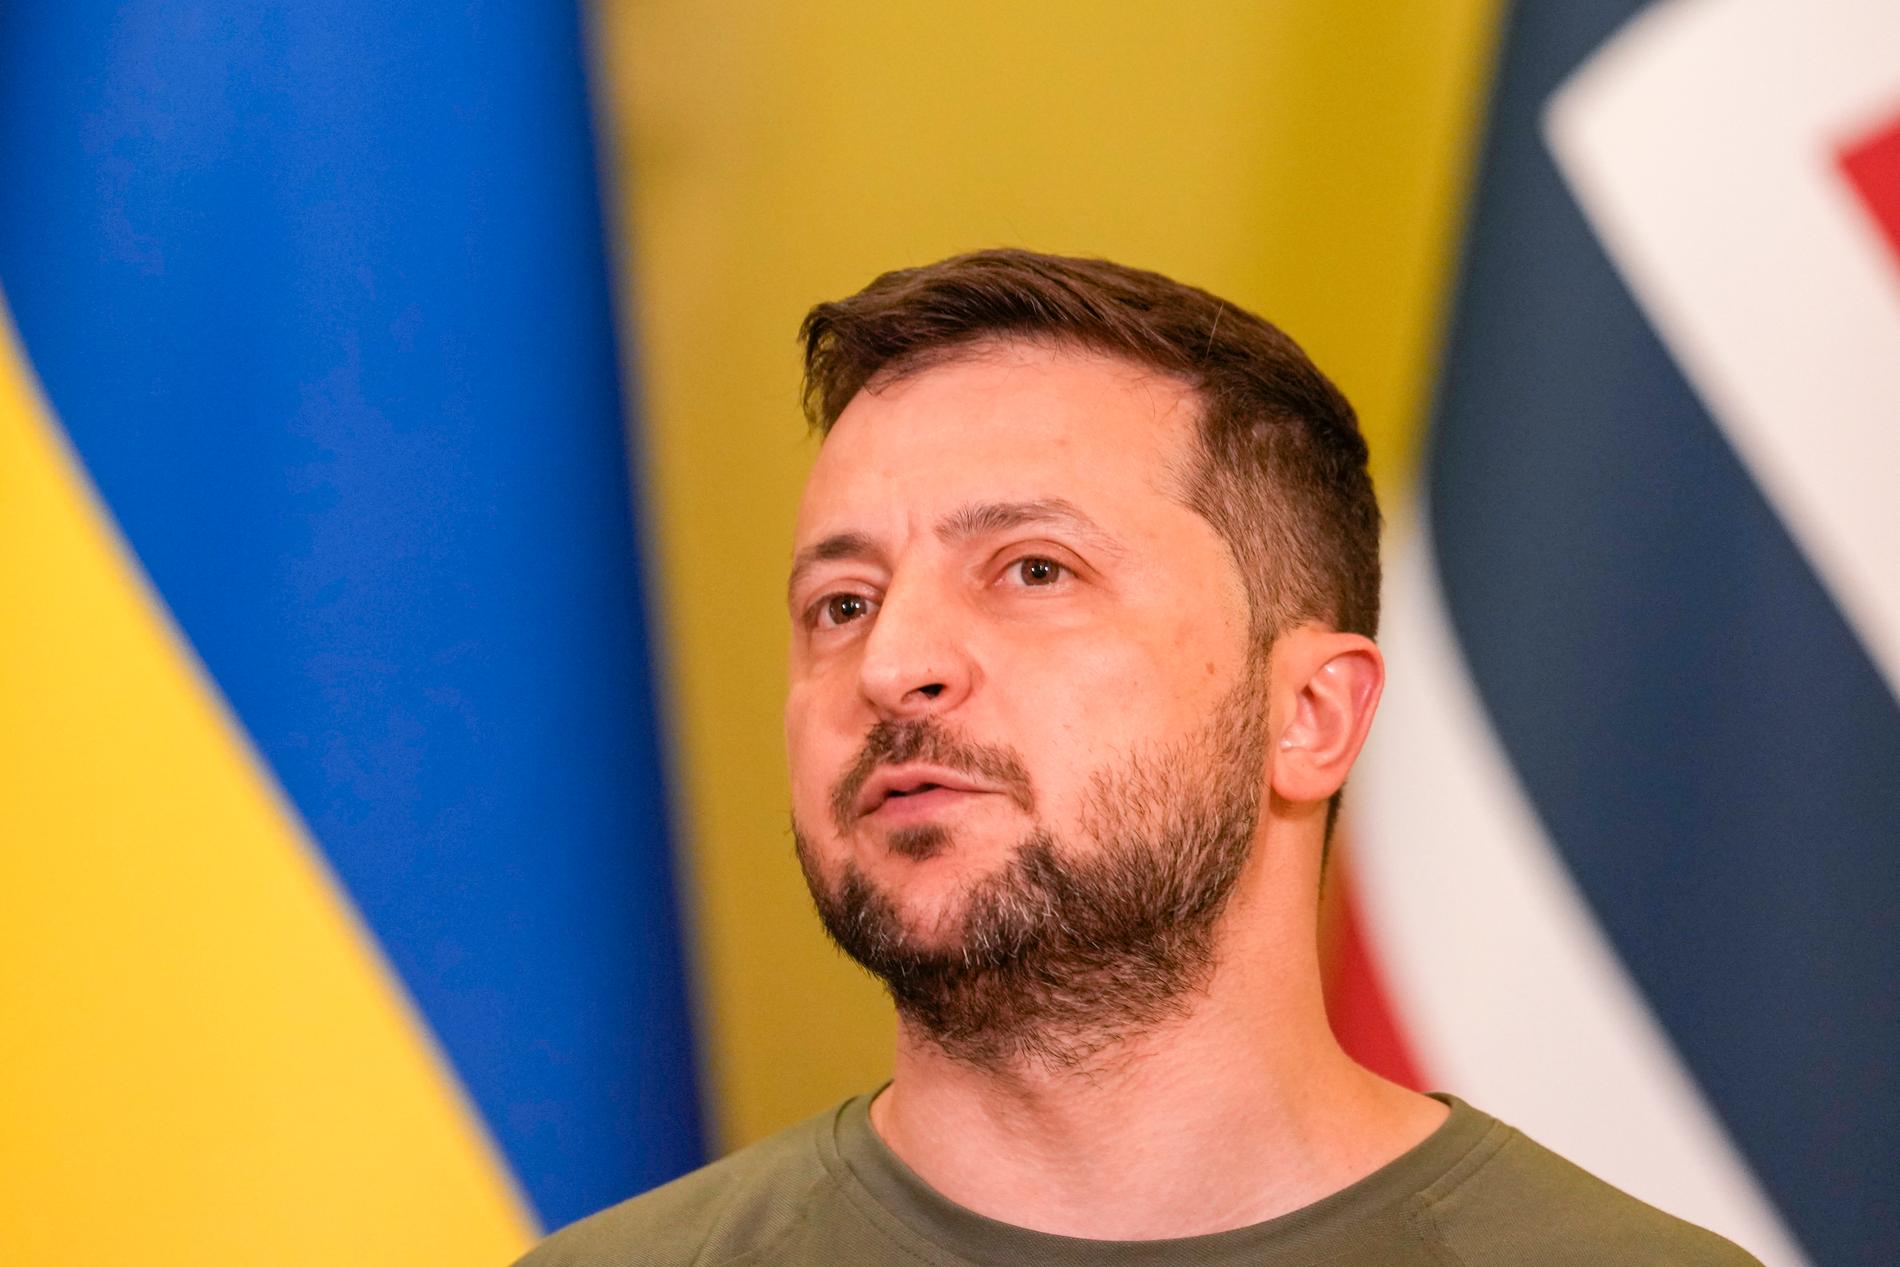  ”Vi tar det avgörande steget att underteckna Ukrainas ansökan om en skyndsam anslutning till Nato”, skriver Ukrainas president Volodymyr Zelenskyj på Telegram